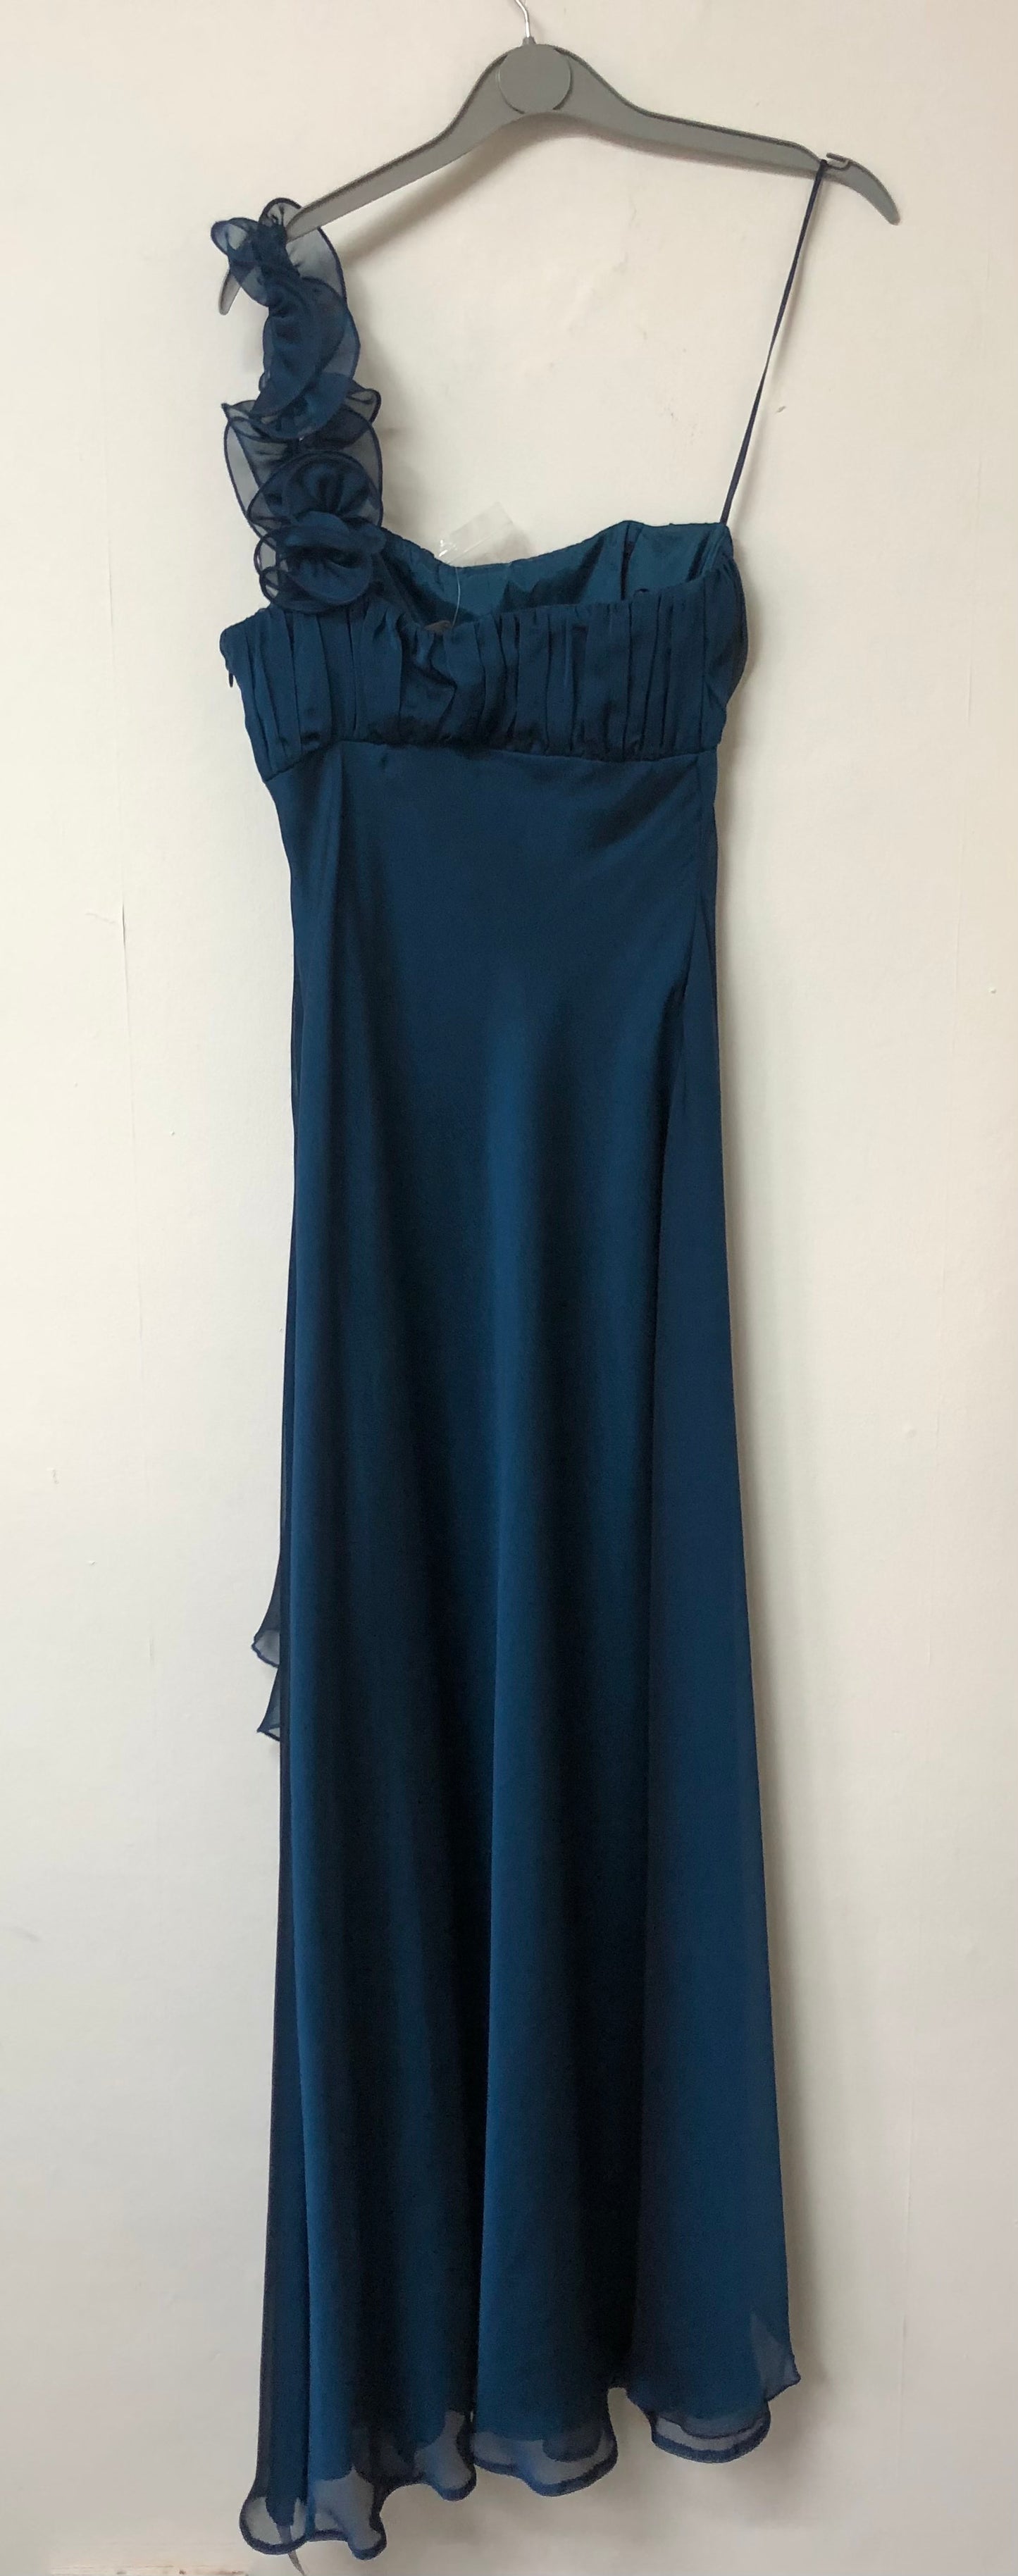 Debut Blue Dress Size 8 BNWT